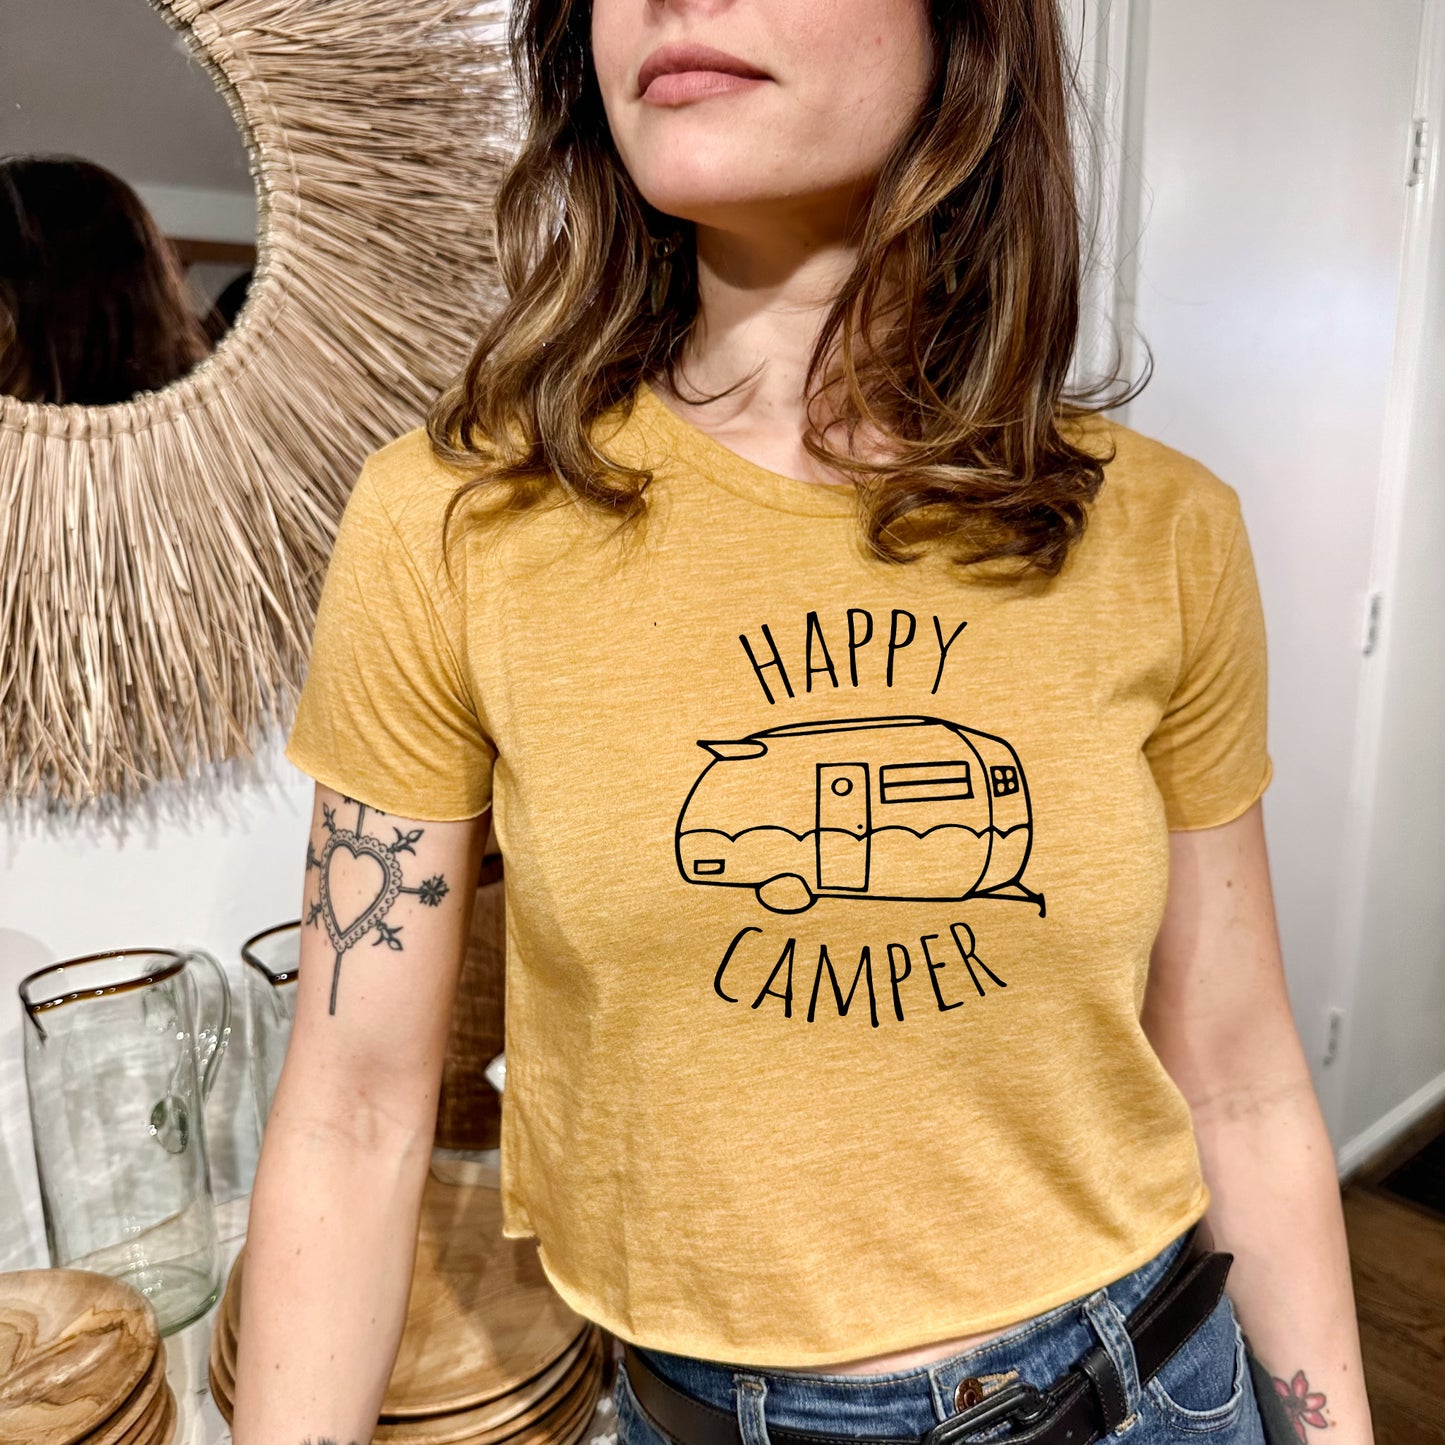 Happy Camper - Women's Crop Tee - Heather Gray or Gold